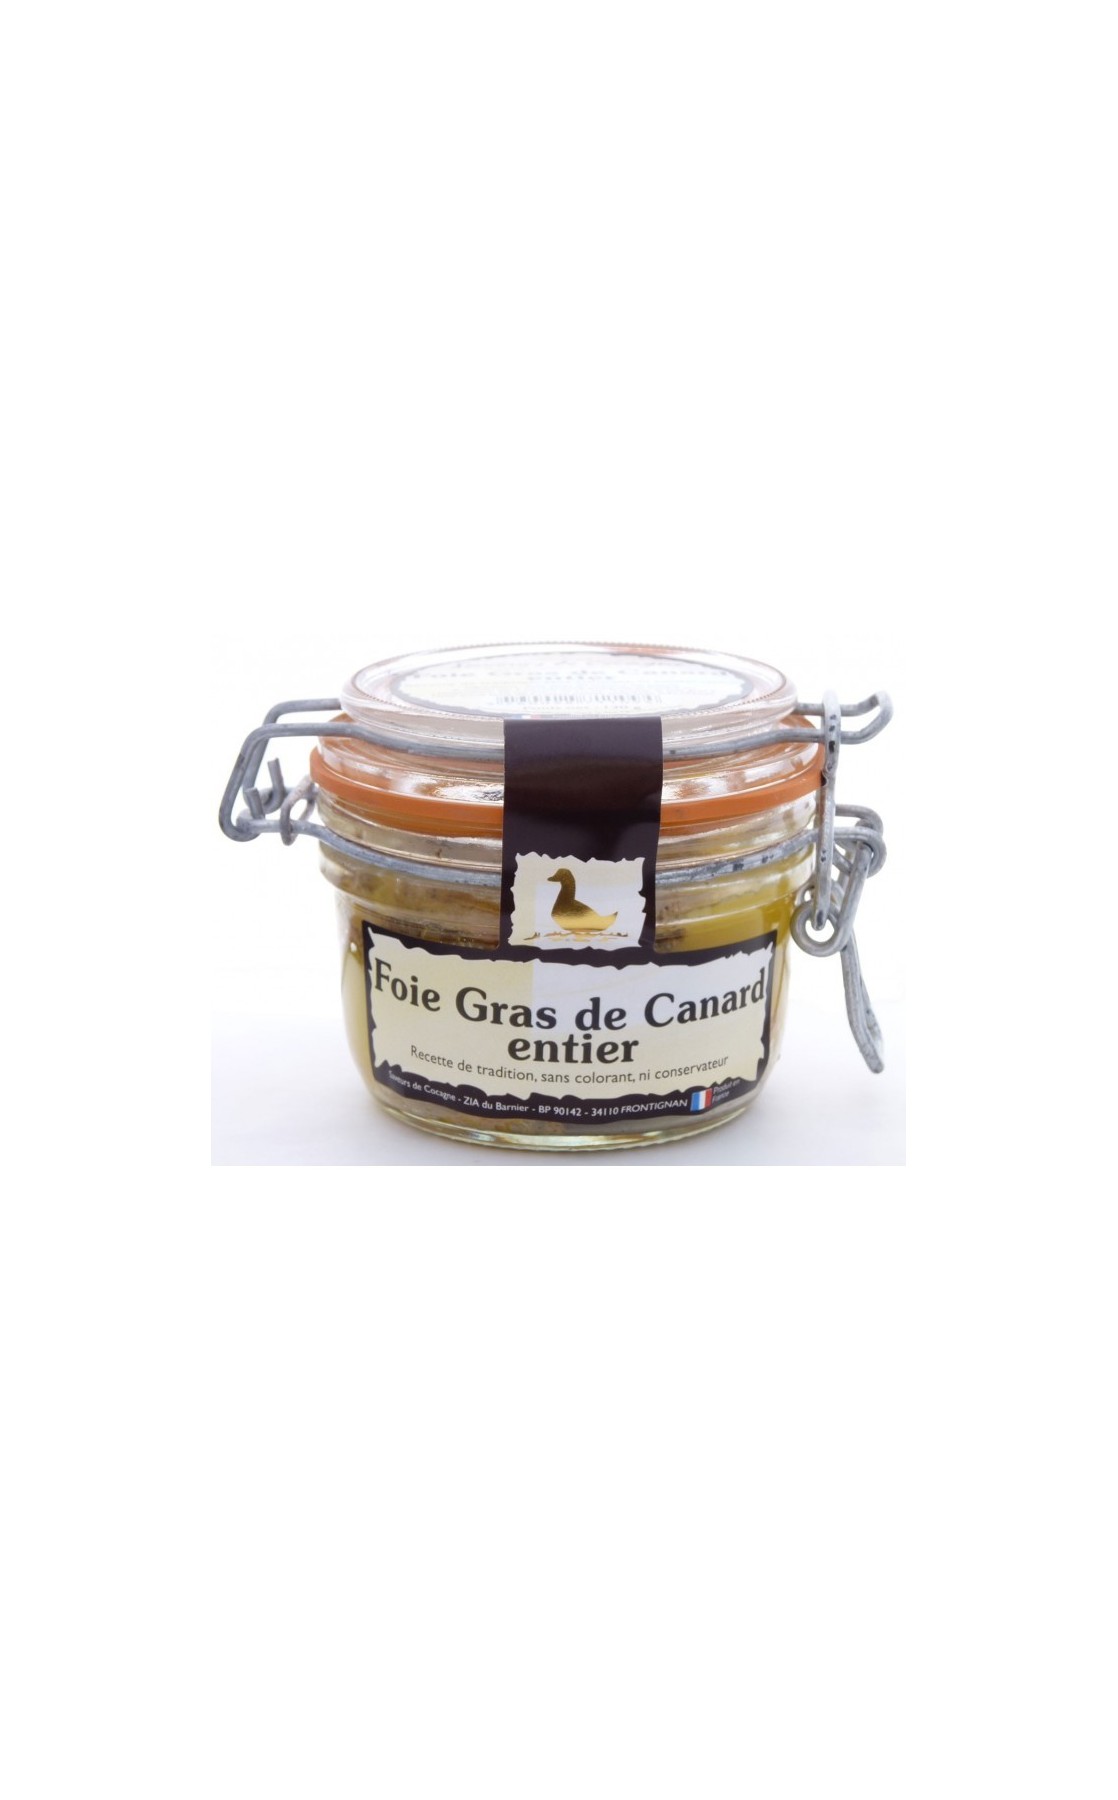 Foie gras de canard entier 125g